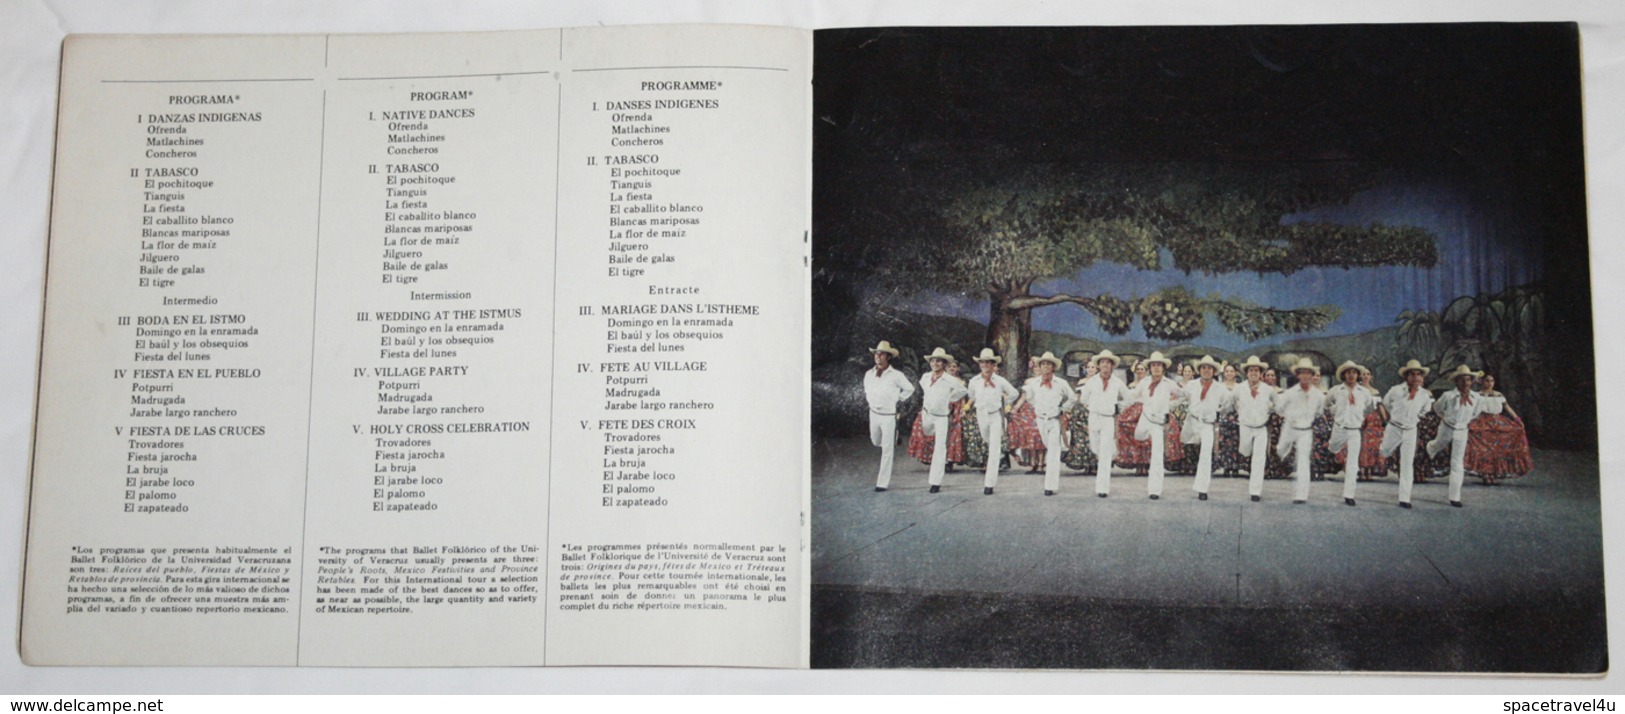 BALLET FOLKLORICO UNIVERSIDAD XALABA MEXICO 1978 - Vintage Ballet BOOKLET Original AUTOGRAPHS 25.1 x 21.2 cm (VF-23-01)